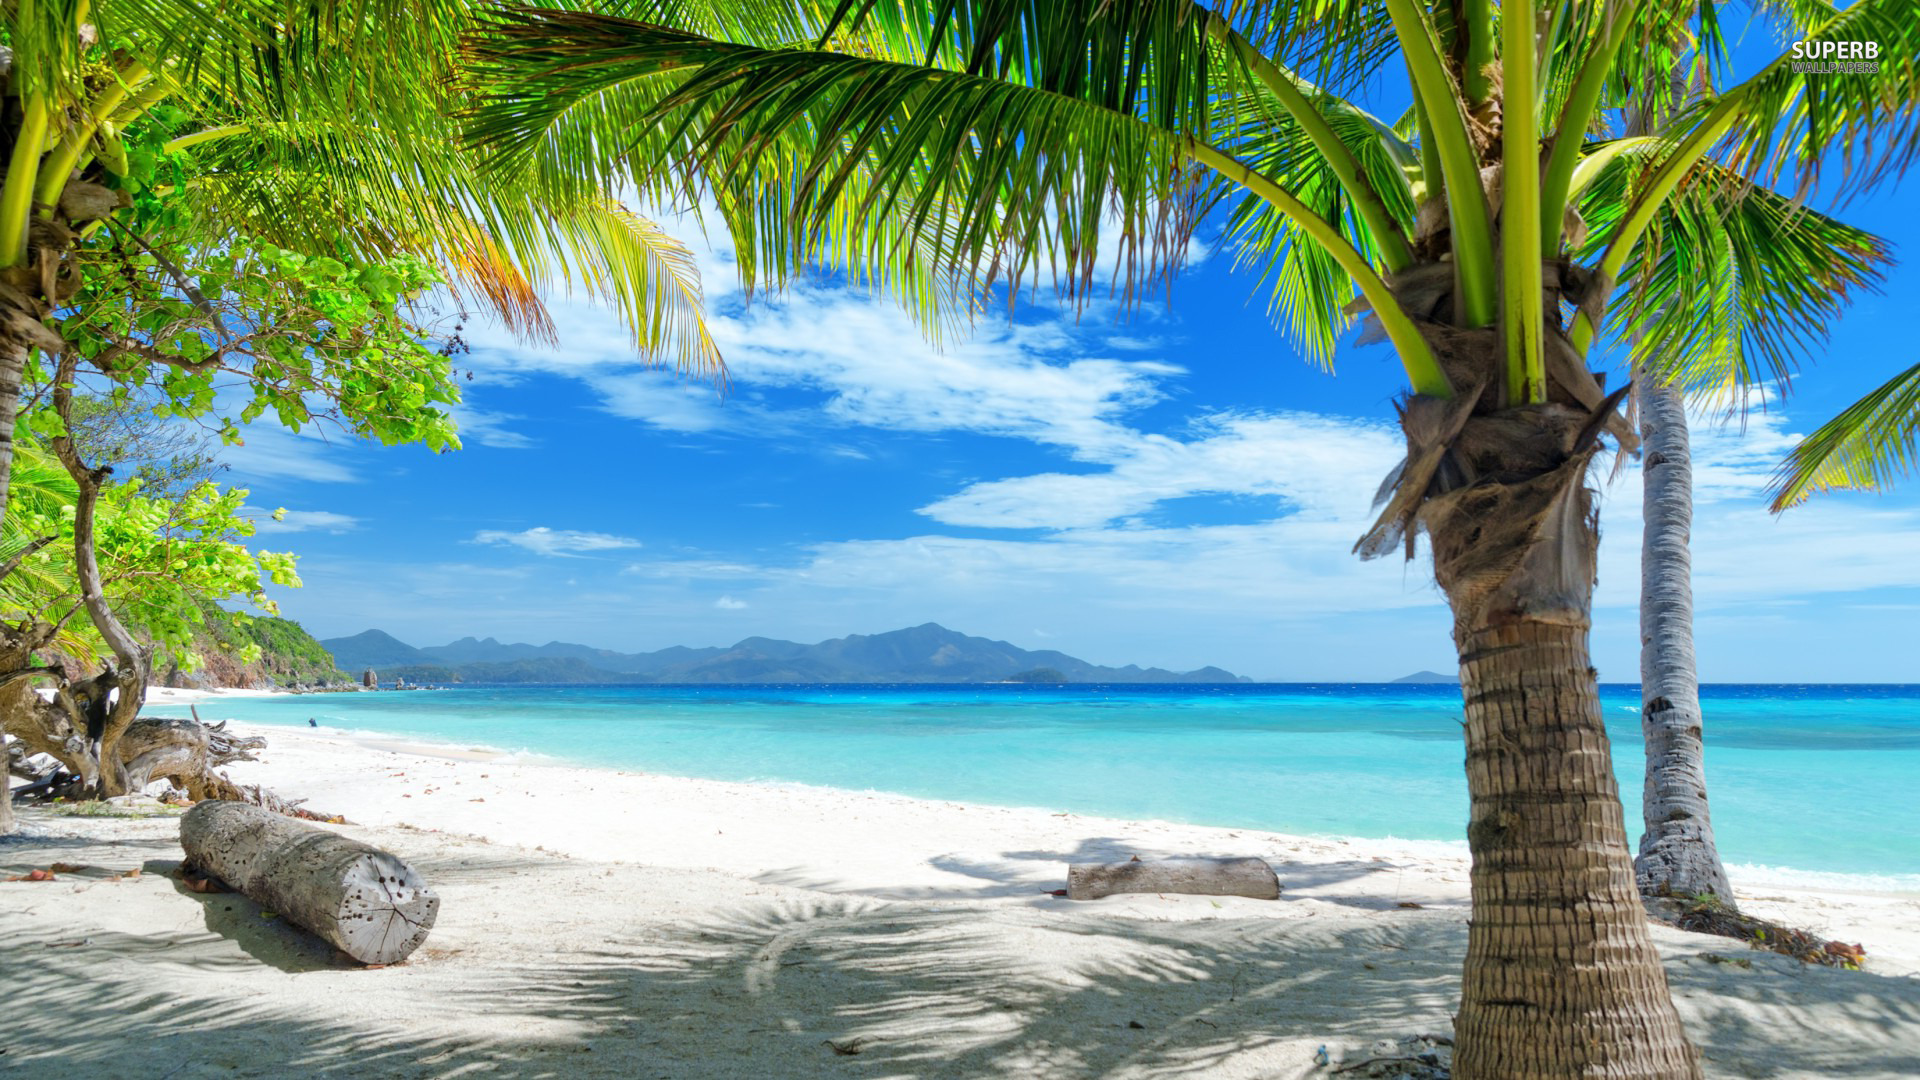 Tropical Beach HD Wallpaper Desktop Background For